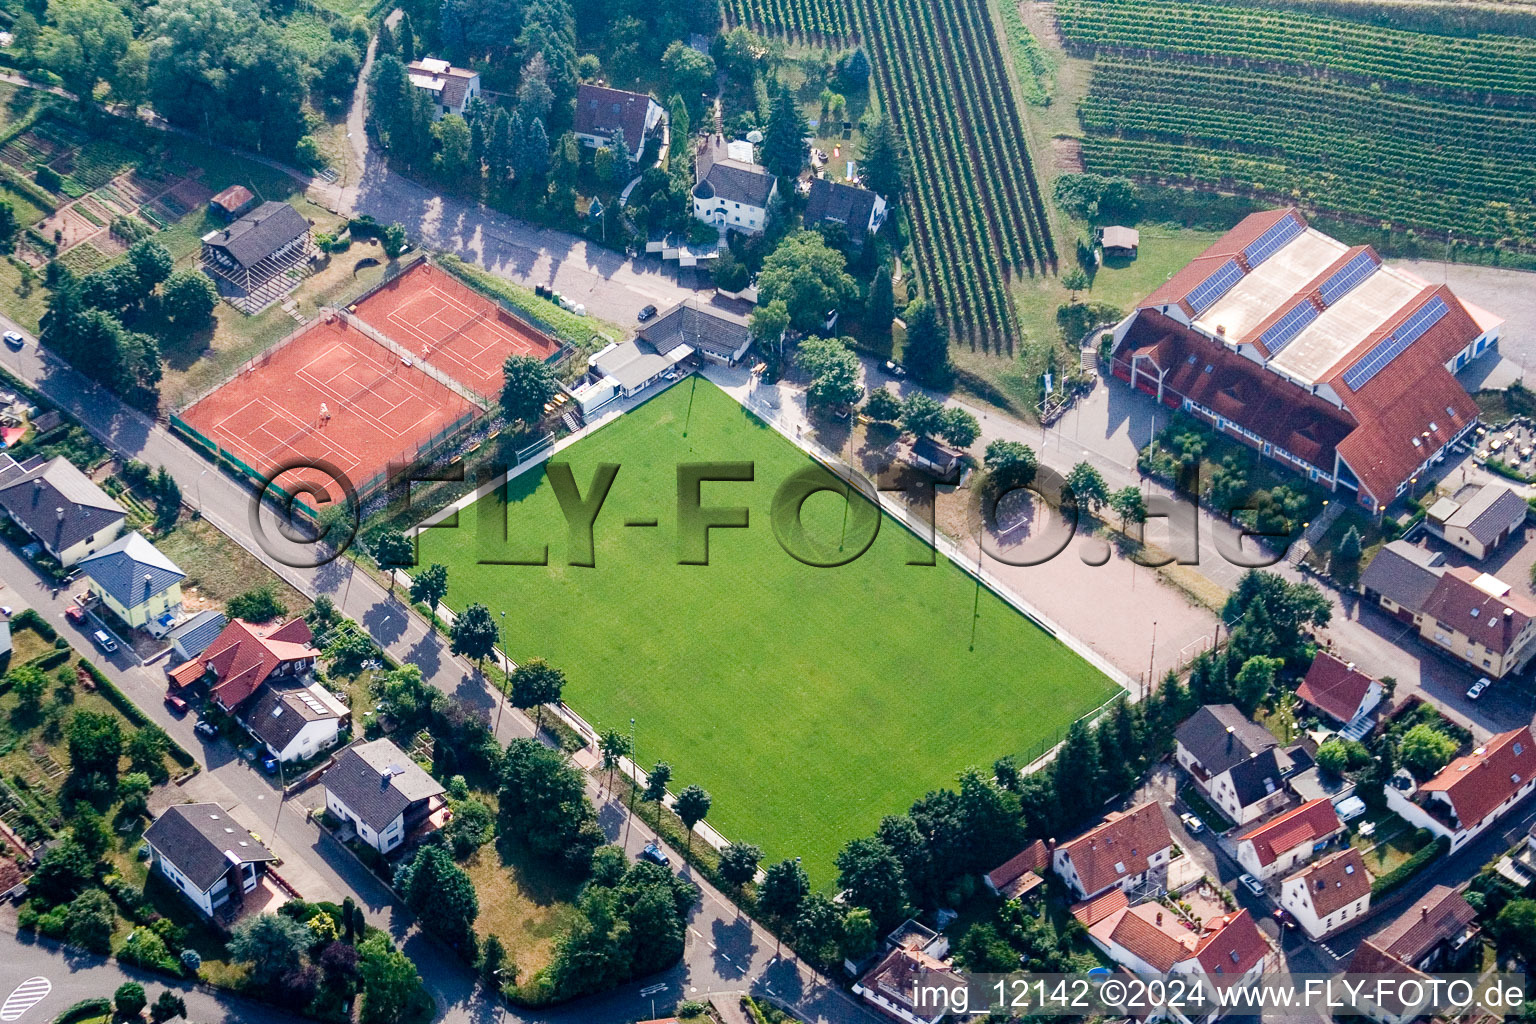 Vue aérienne de Terrain de football et court de tennis avec terrain de jeu rouge à Albersweiler dans le département Rhénanie-Palatinat, Allemagne